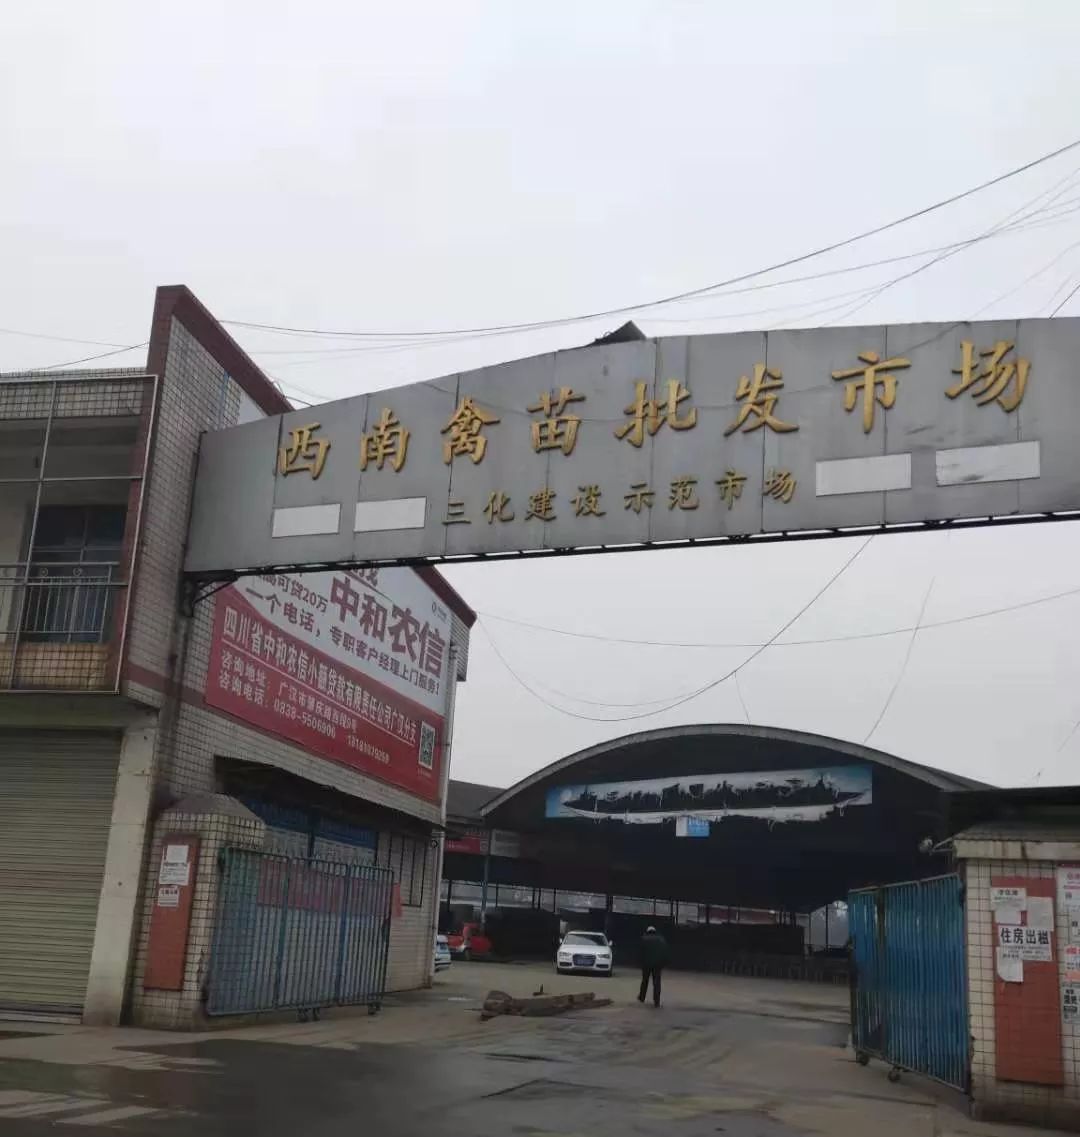 【看点】 遭遇变机遇 ,广汉这家西南最大禽苗市场困局突围!